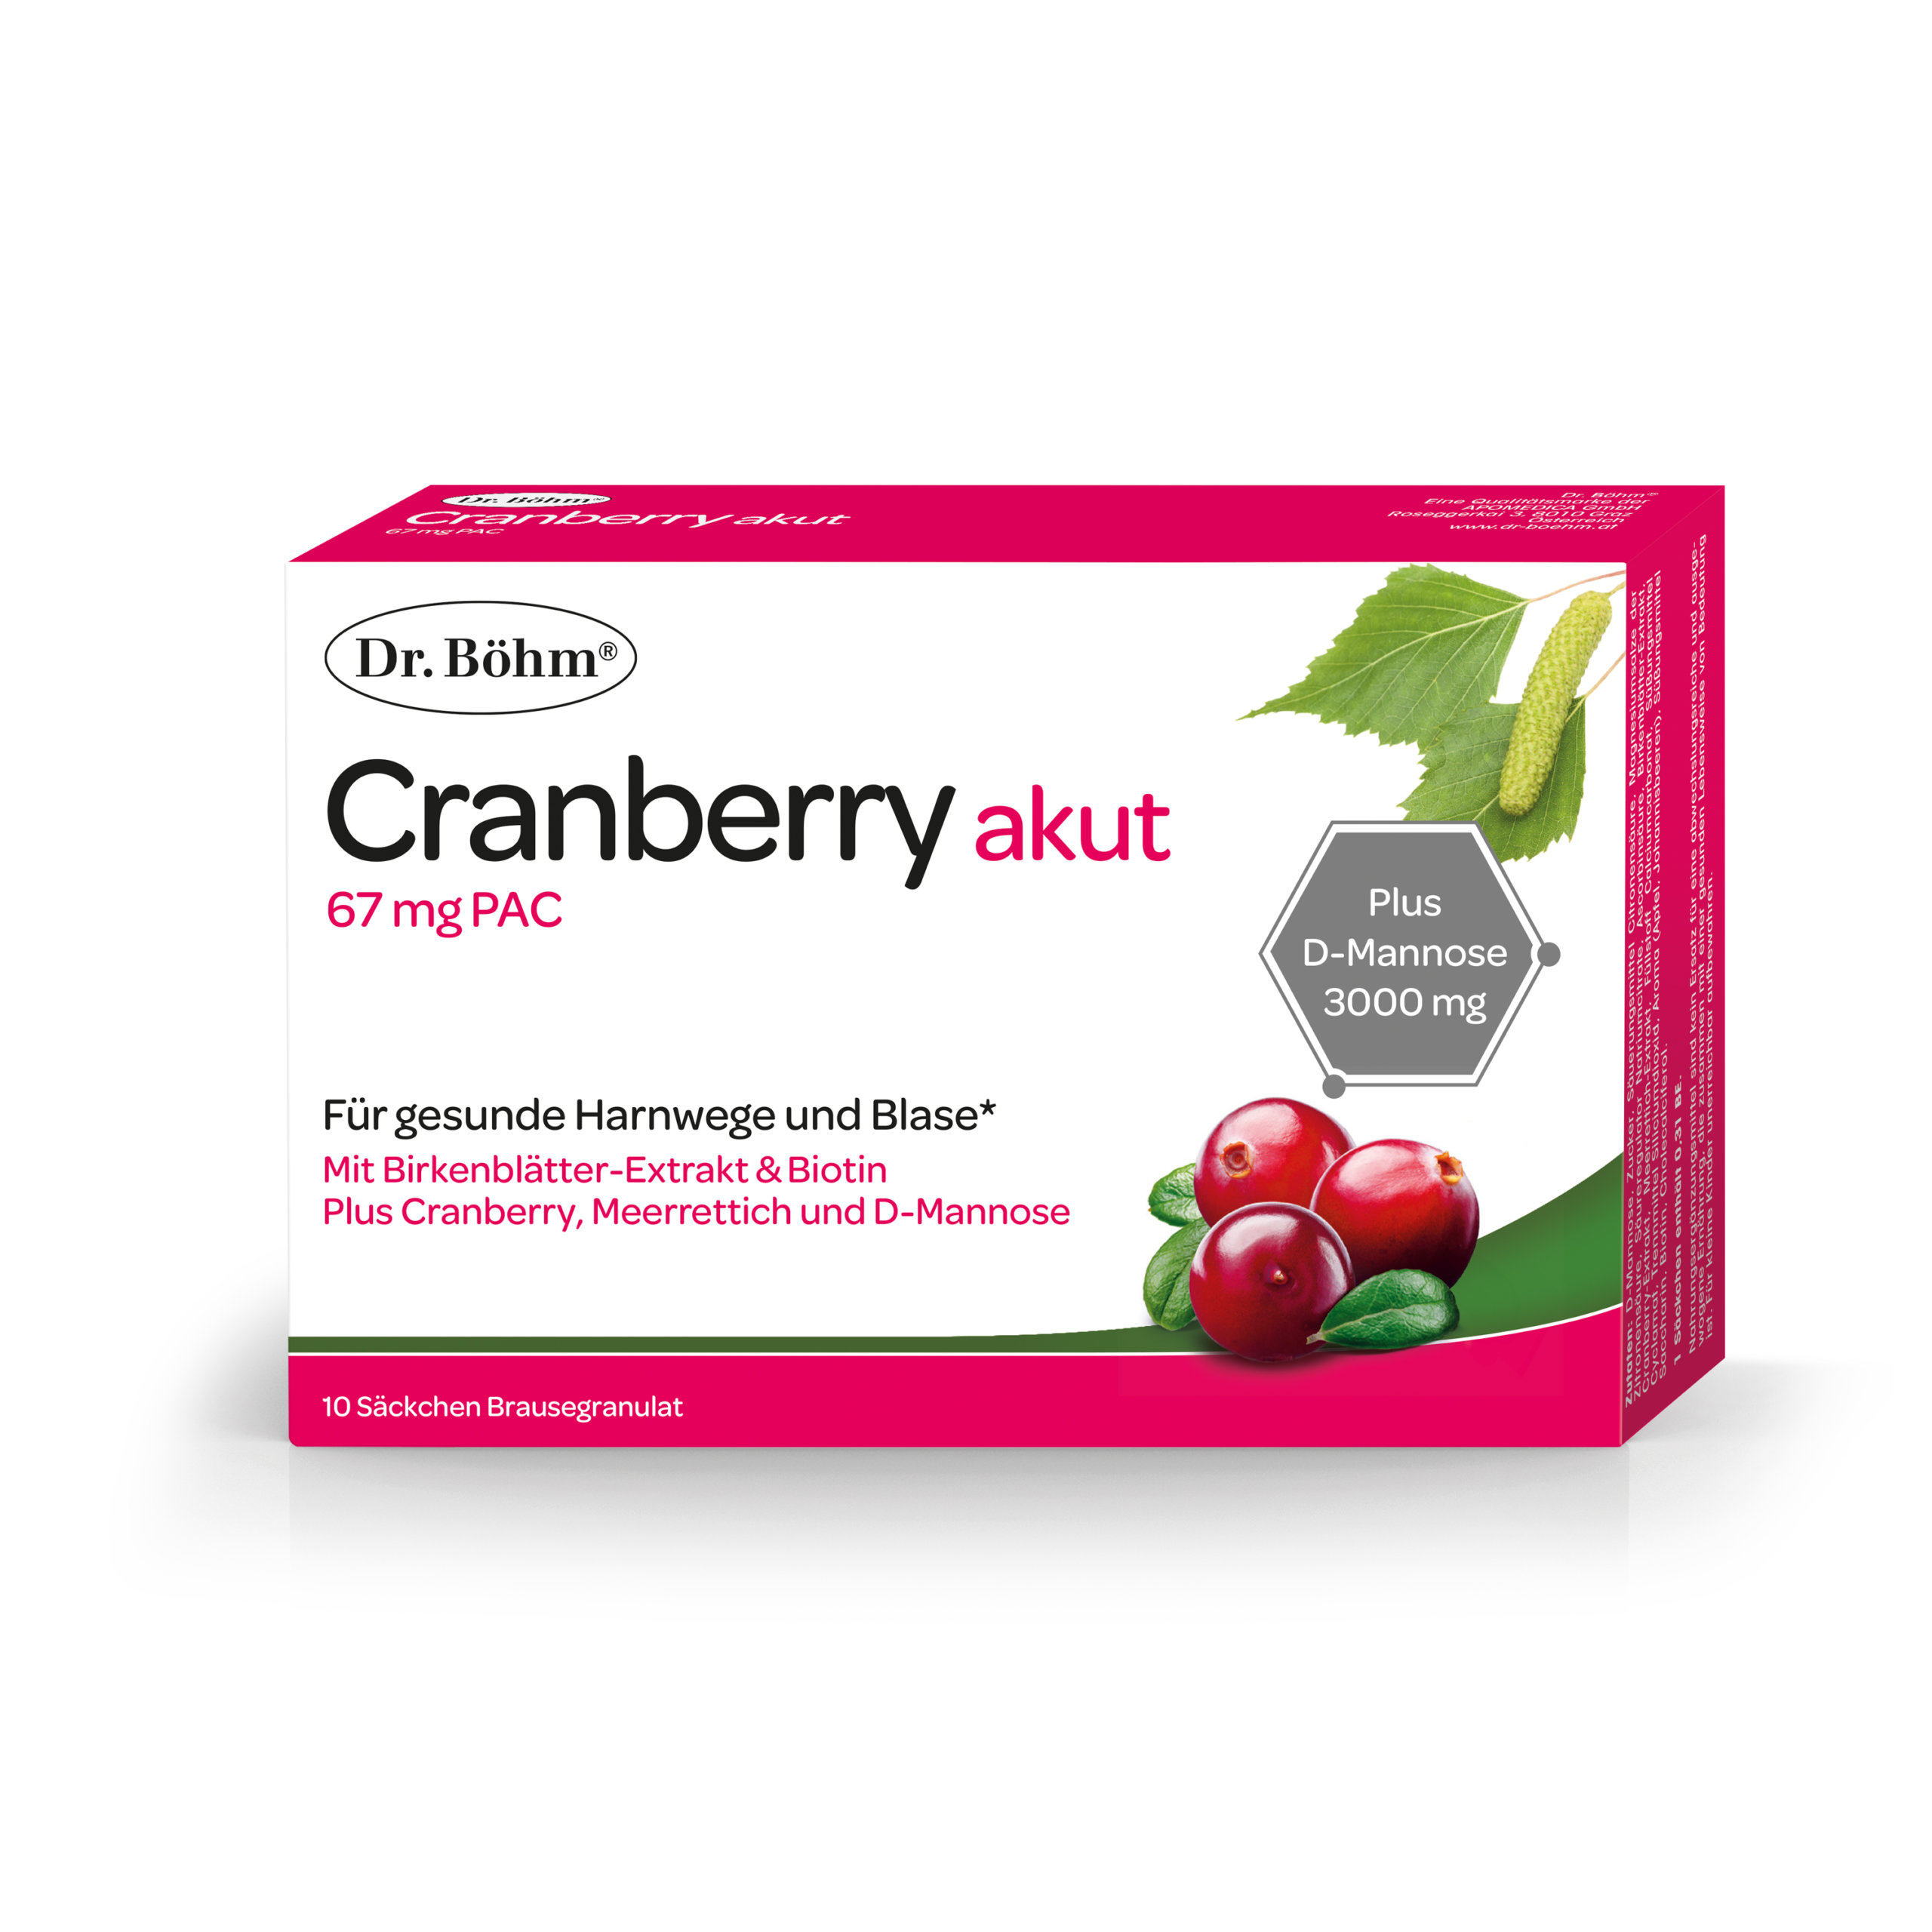 Dr. Böhm® Cranberry akut für gesunde Harnwege und Blase